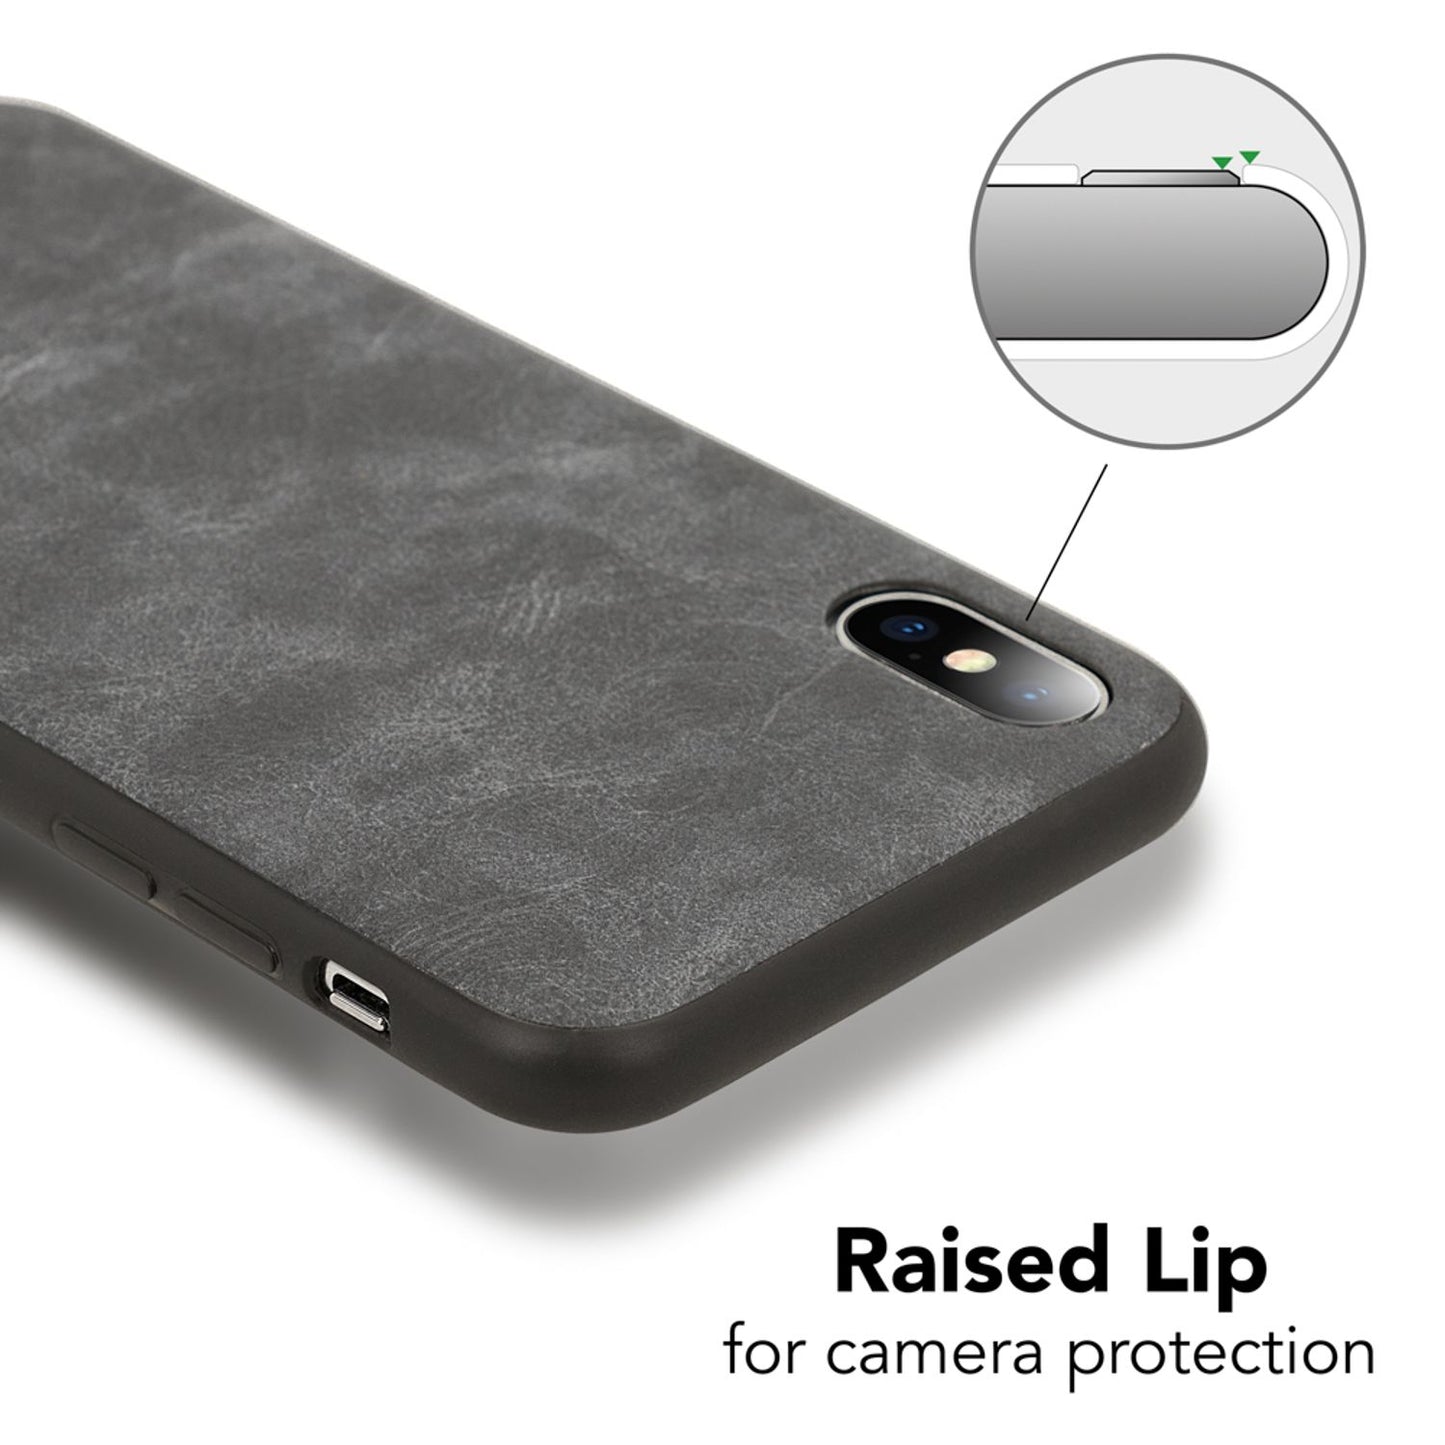 NALIA Kunstleder Hülle für iPhone X / XS, Slim Schutz Case Handy Cover Bumper